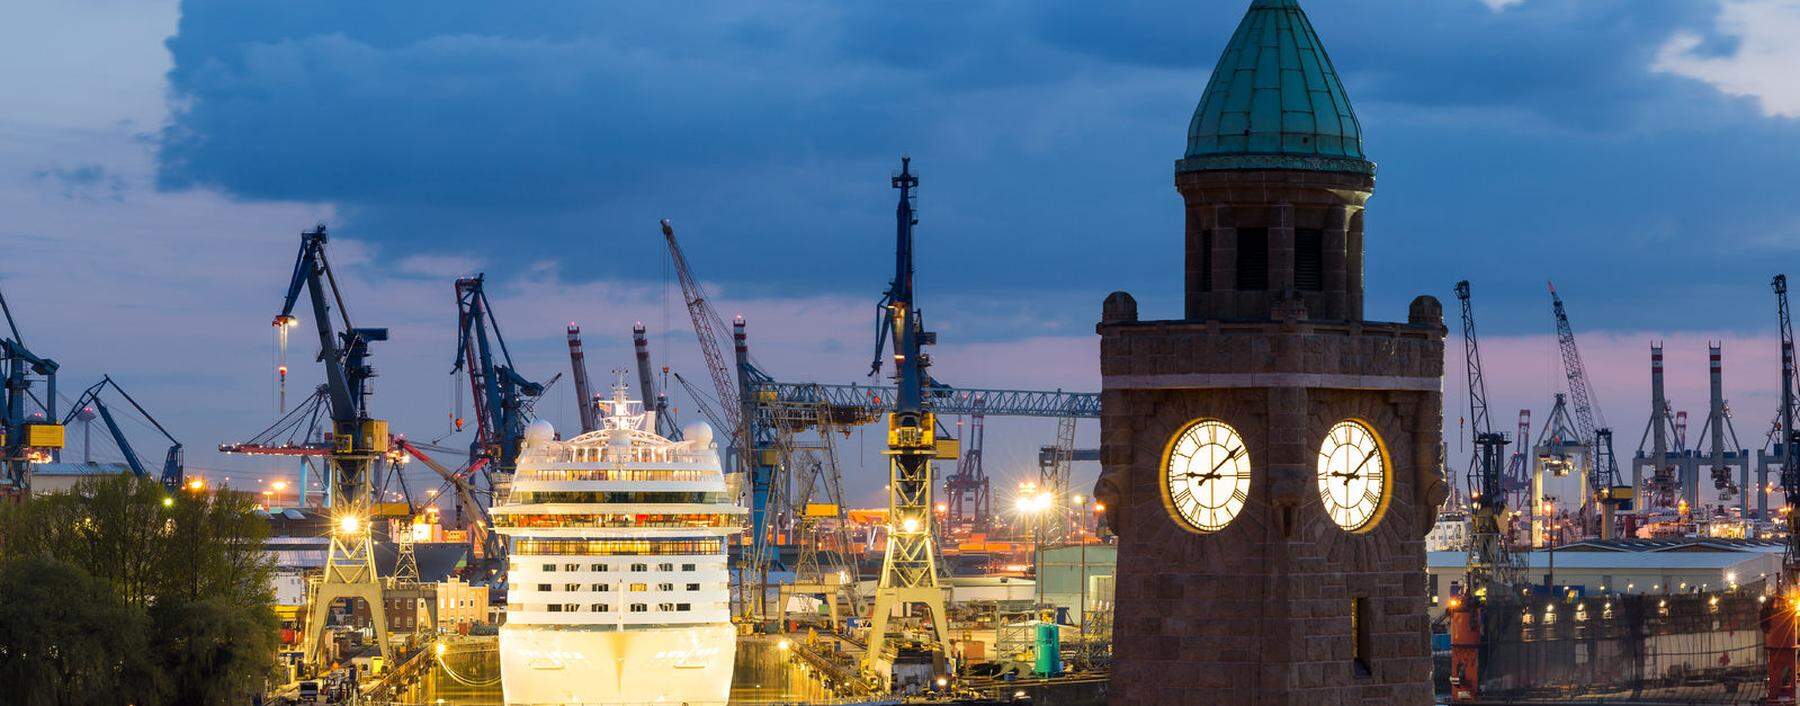 Die Hafenstadt Hamburg durchlebt wegen des Coronavirus auch wirtschaftlich schwere Zeiten.